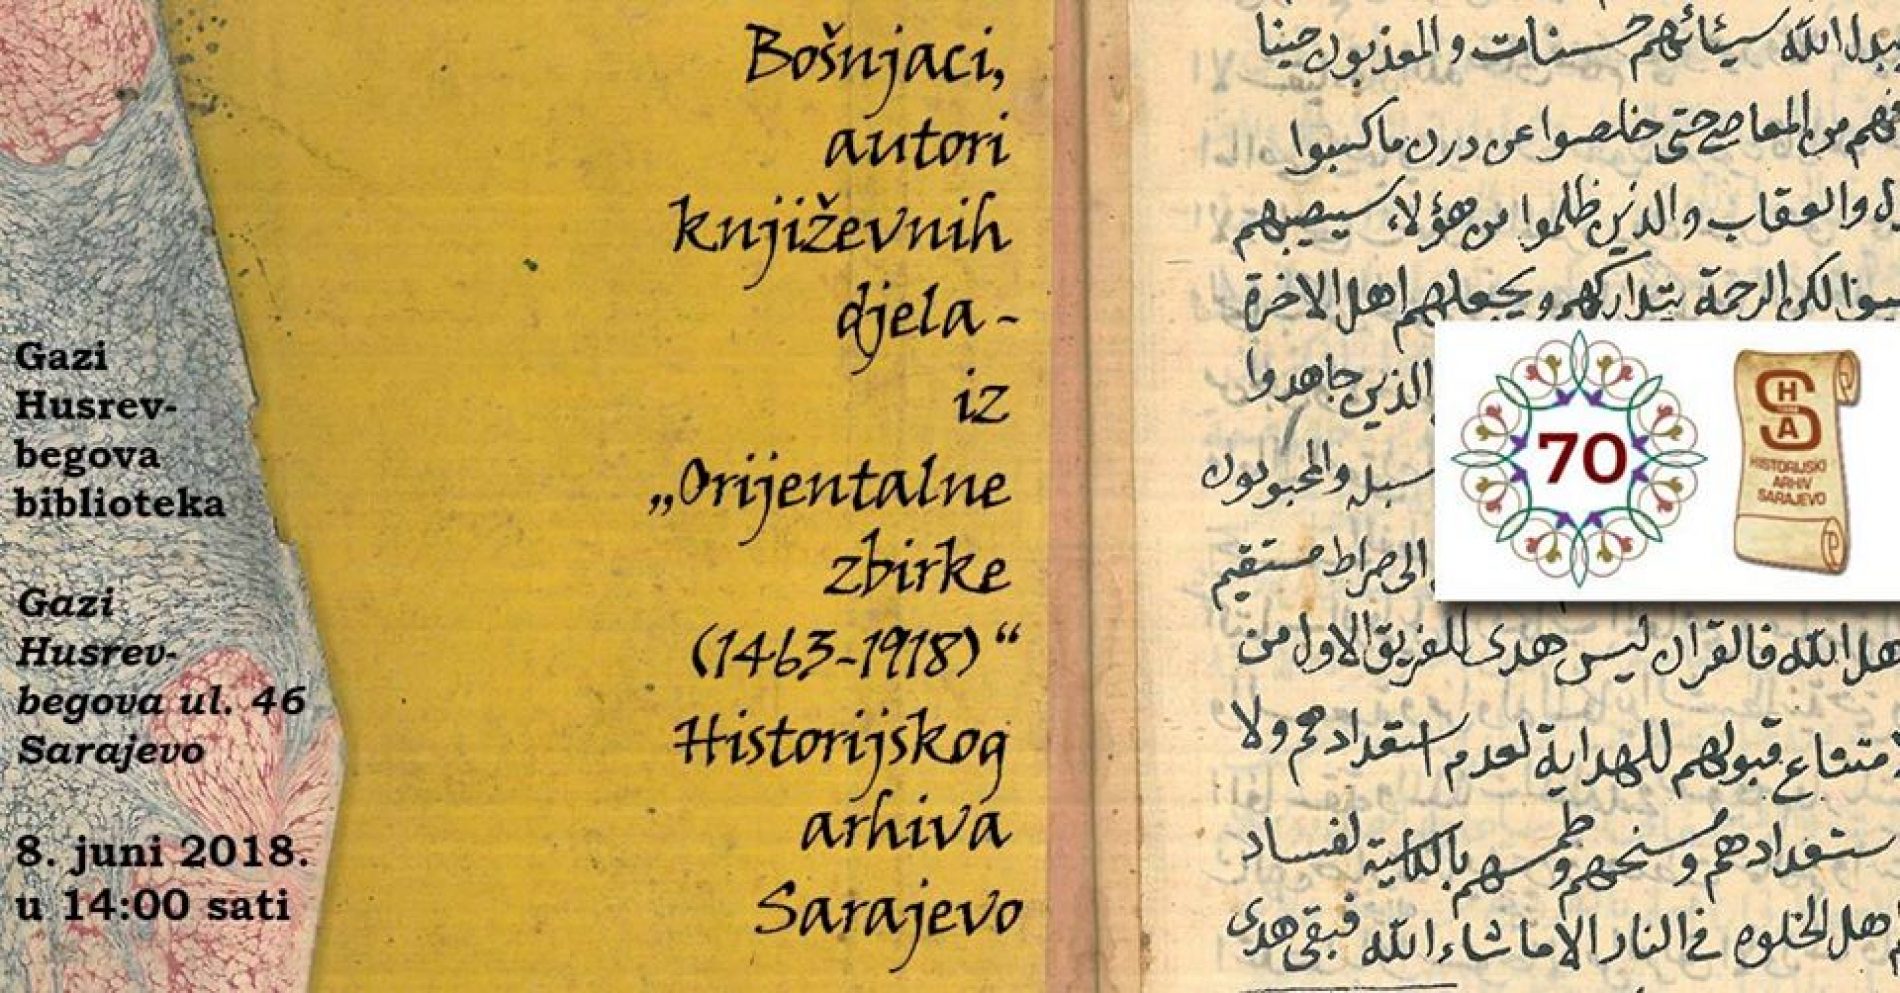 Izložba: Bošnjaci, autori književnih djela – iz Orijentalne zbirke (1463-1918) Historijskog arhiva Sarajevo”